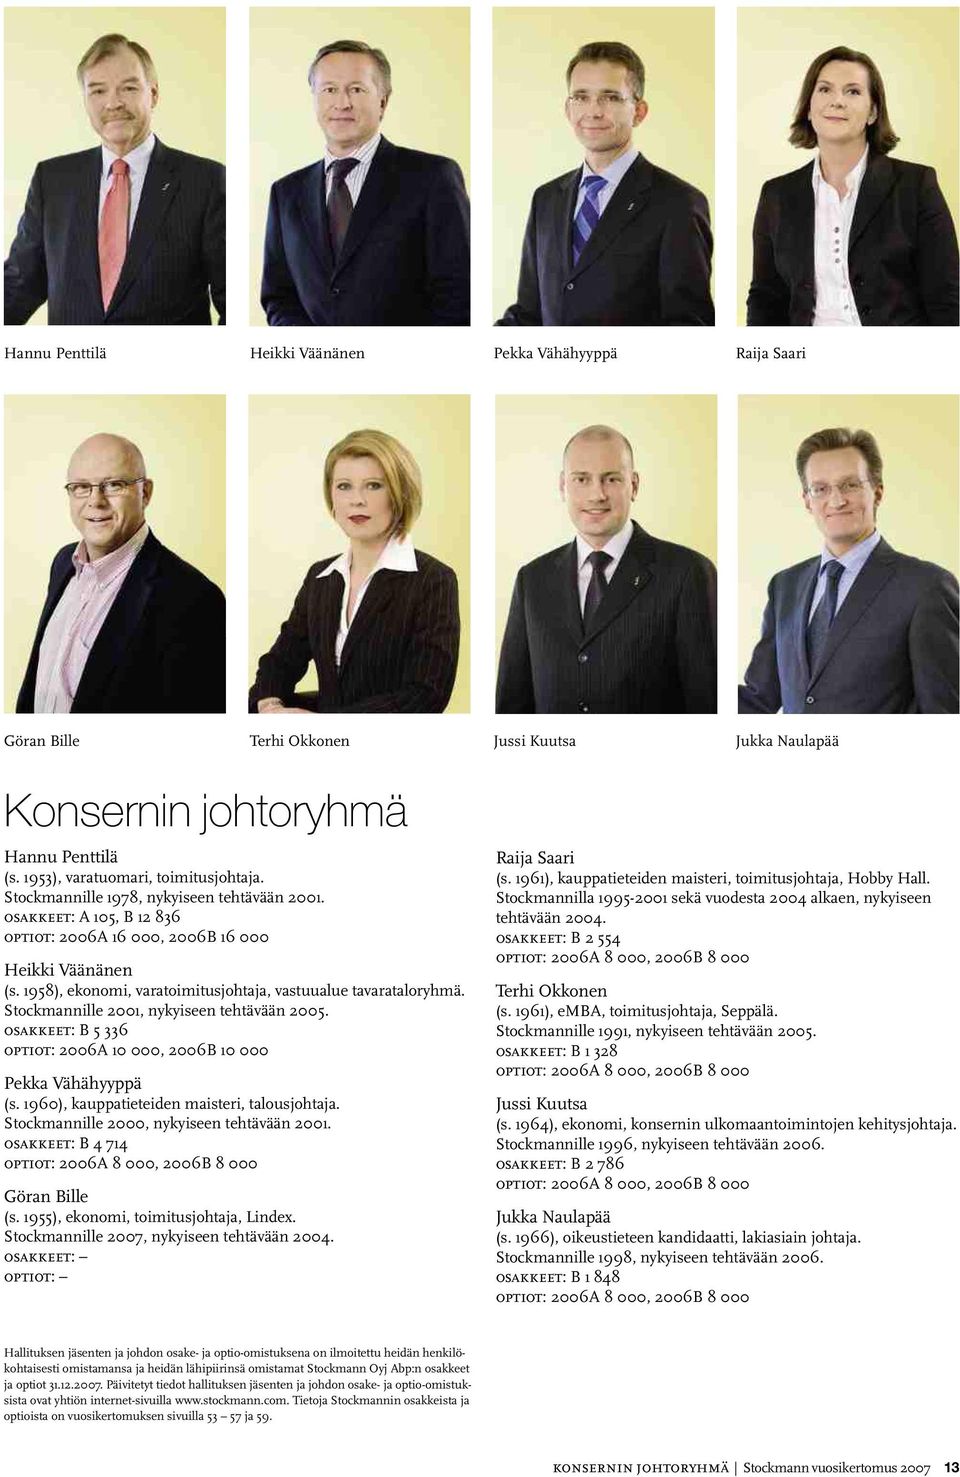 Stockmannille 2001, nykyiseen tehtävään 2005. osakkeet: B 5 336 optiot: 2006A 10 000, 2006B 10 000 Pekka Vähähyyppä (s. 1960), kauppatieteiden maisteri, talousjohtaja.